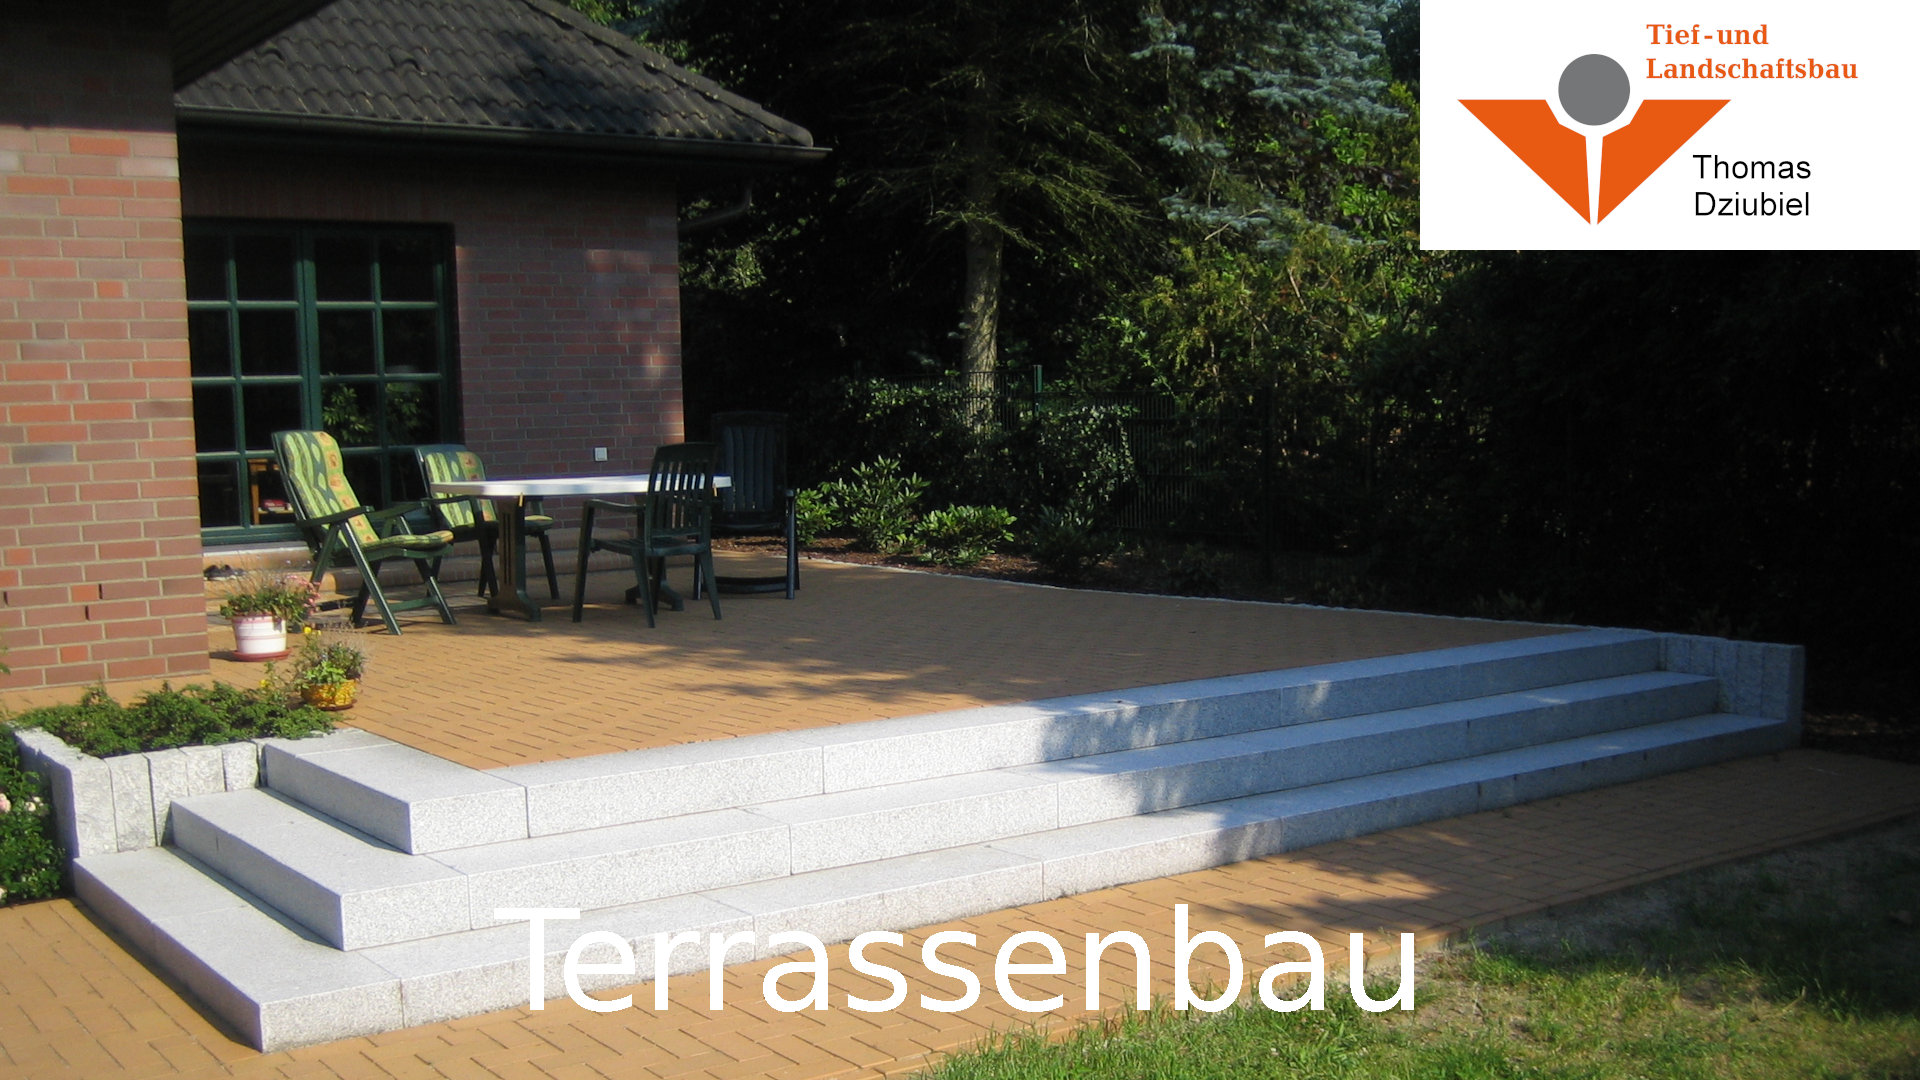 Terrassenbau in Schwerin - Tief- und Landschaftsbau Thomas Dziubiel